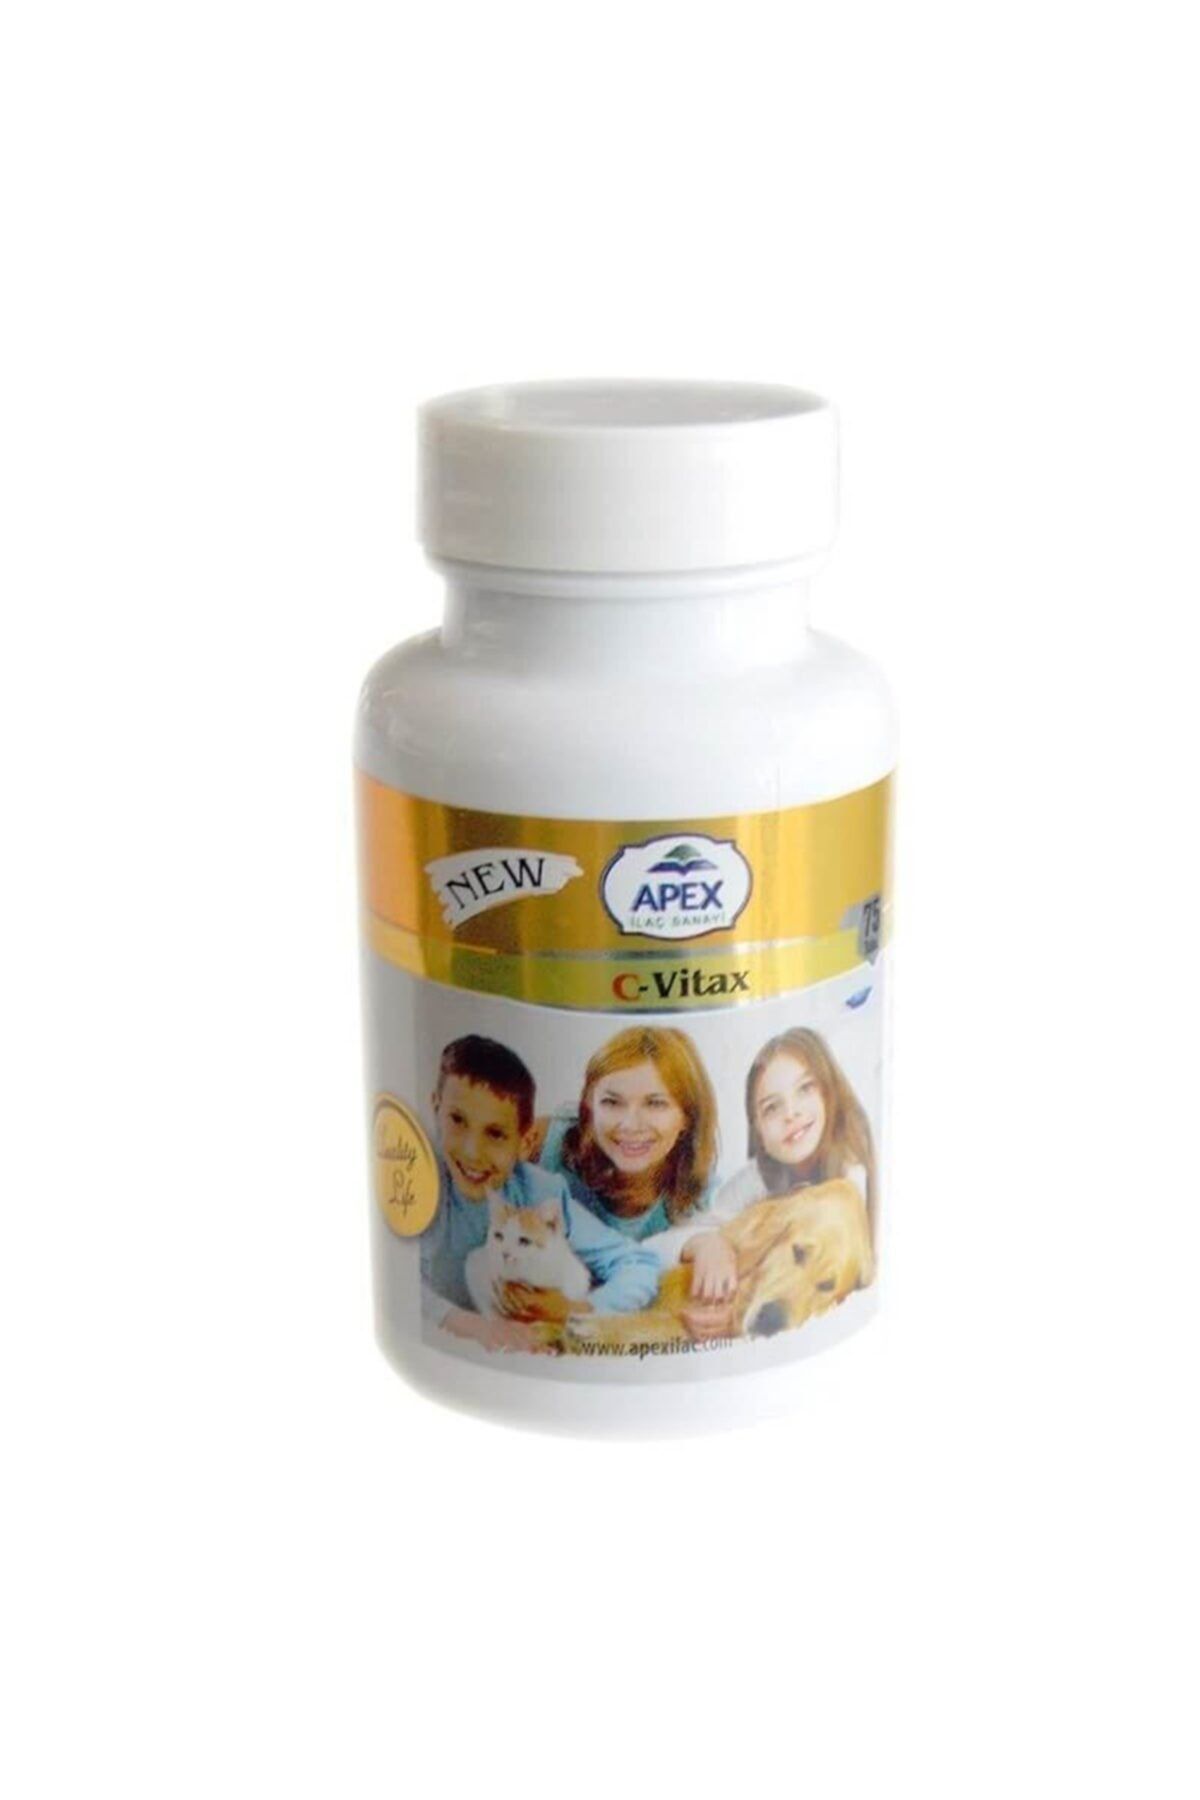 Apex Köpekler Için C Vitamini - Antioksidan C-vitax Tablet 75 Adet